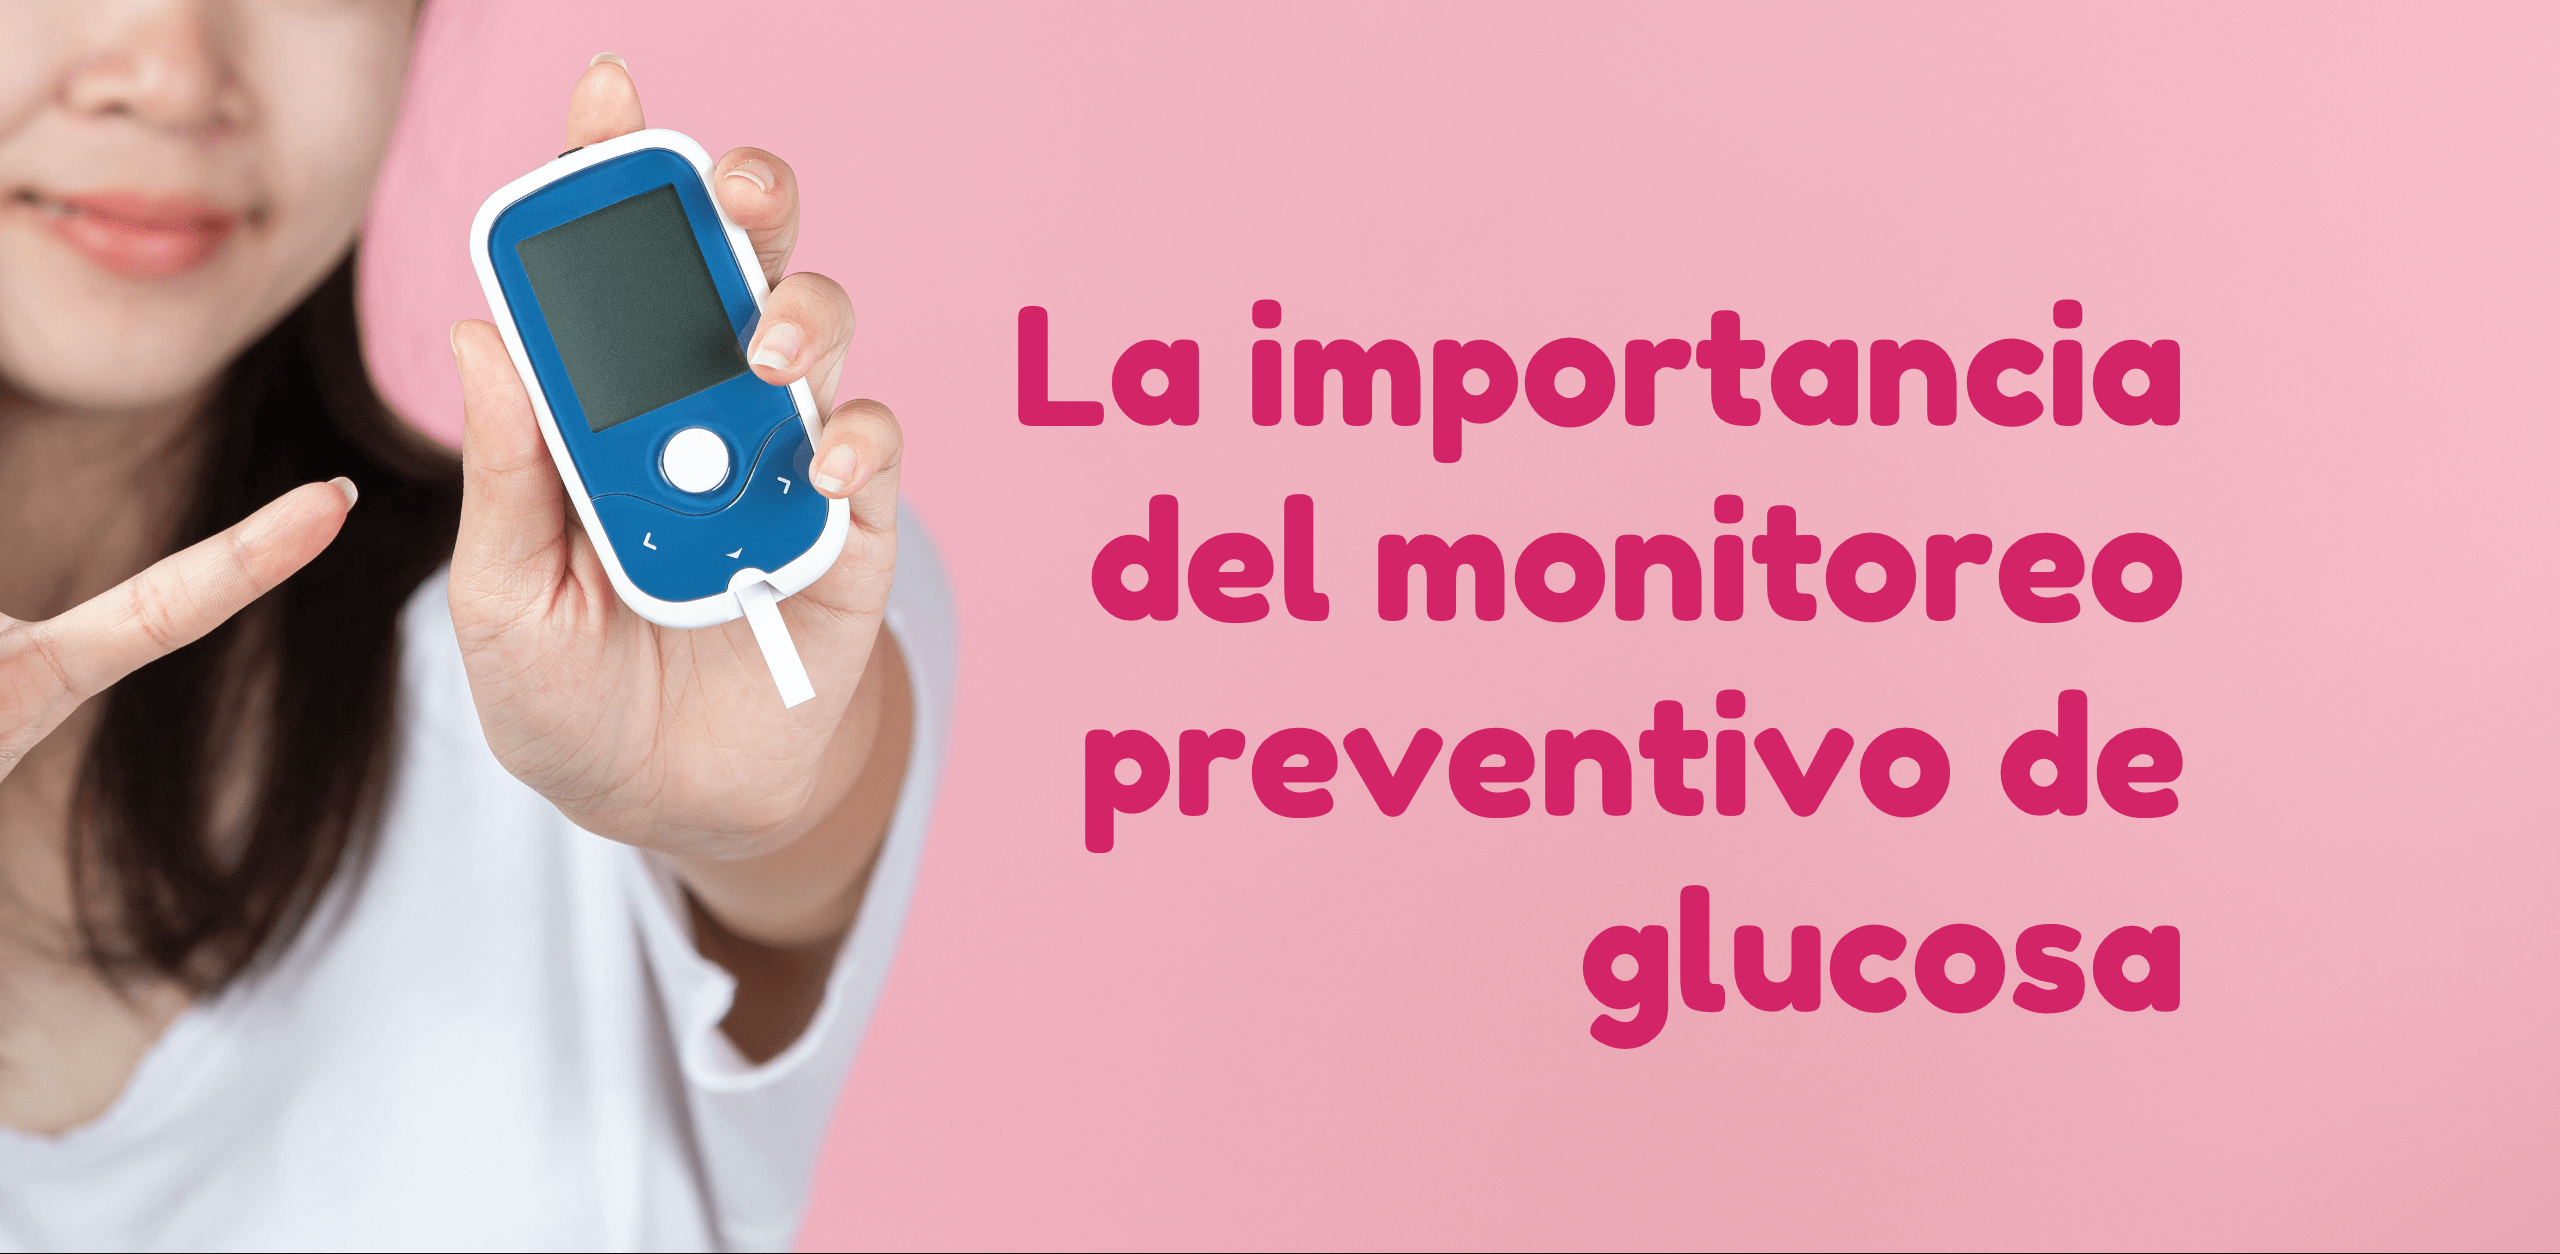 La importancia del monitoreo preventivo de glucosa